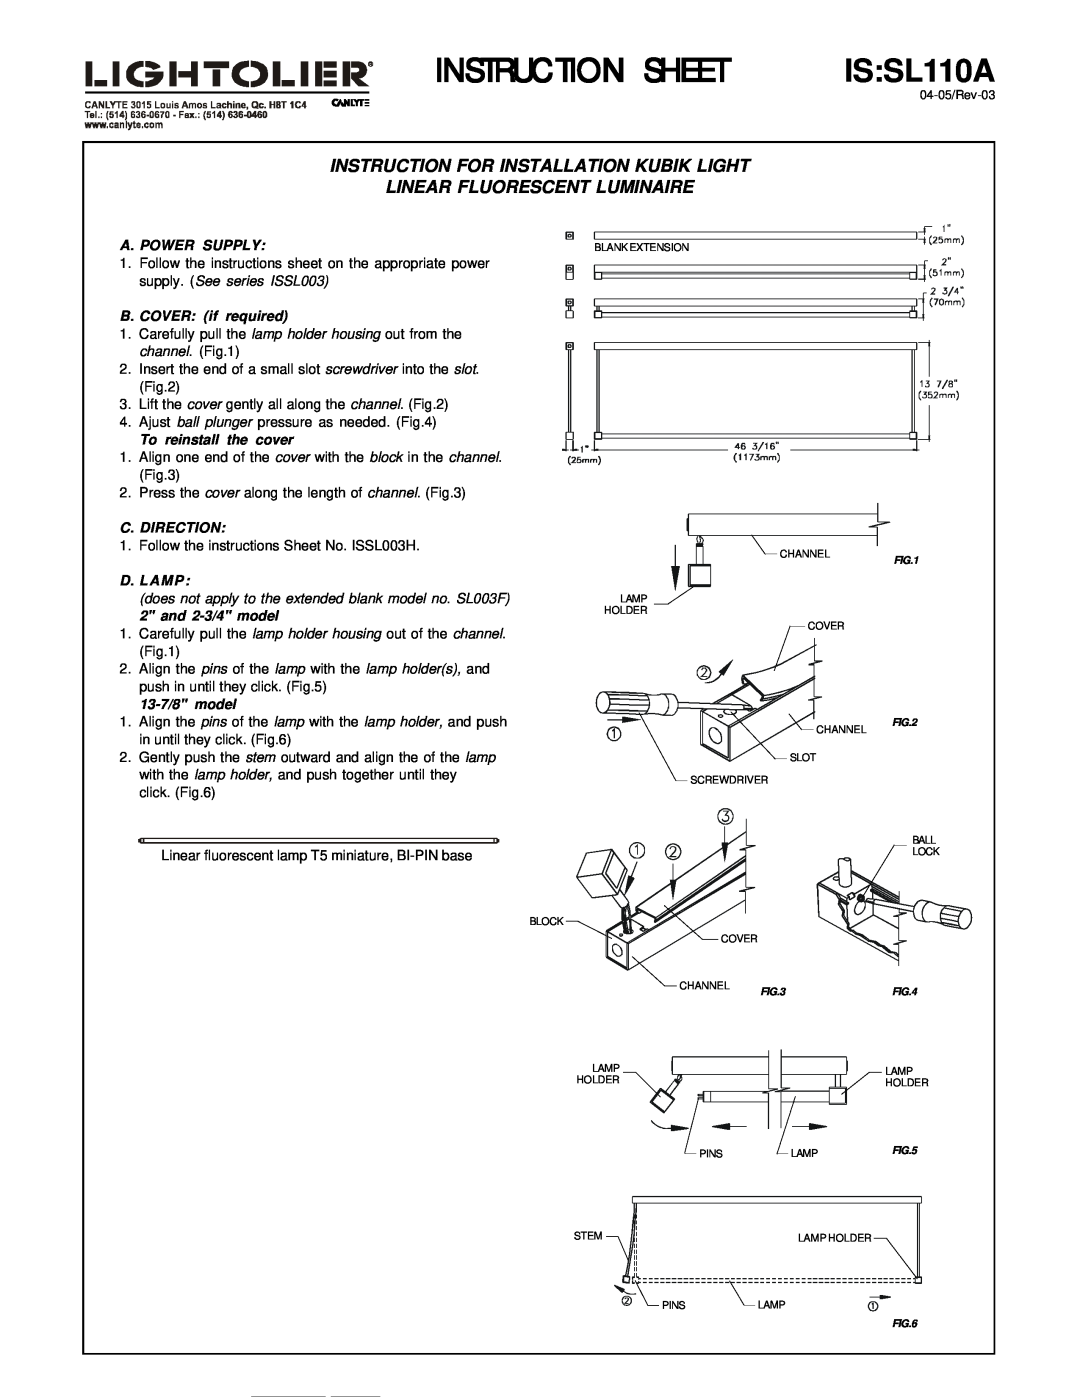 Lightolier IS:SL110A instruction sheet Instruction Sheet, IS SL110A, Instruction For Installation Kubik Light, D. Lamp 